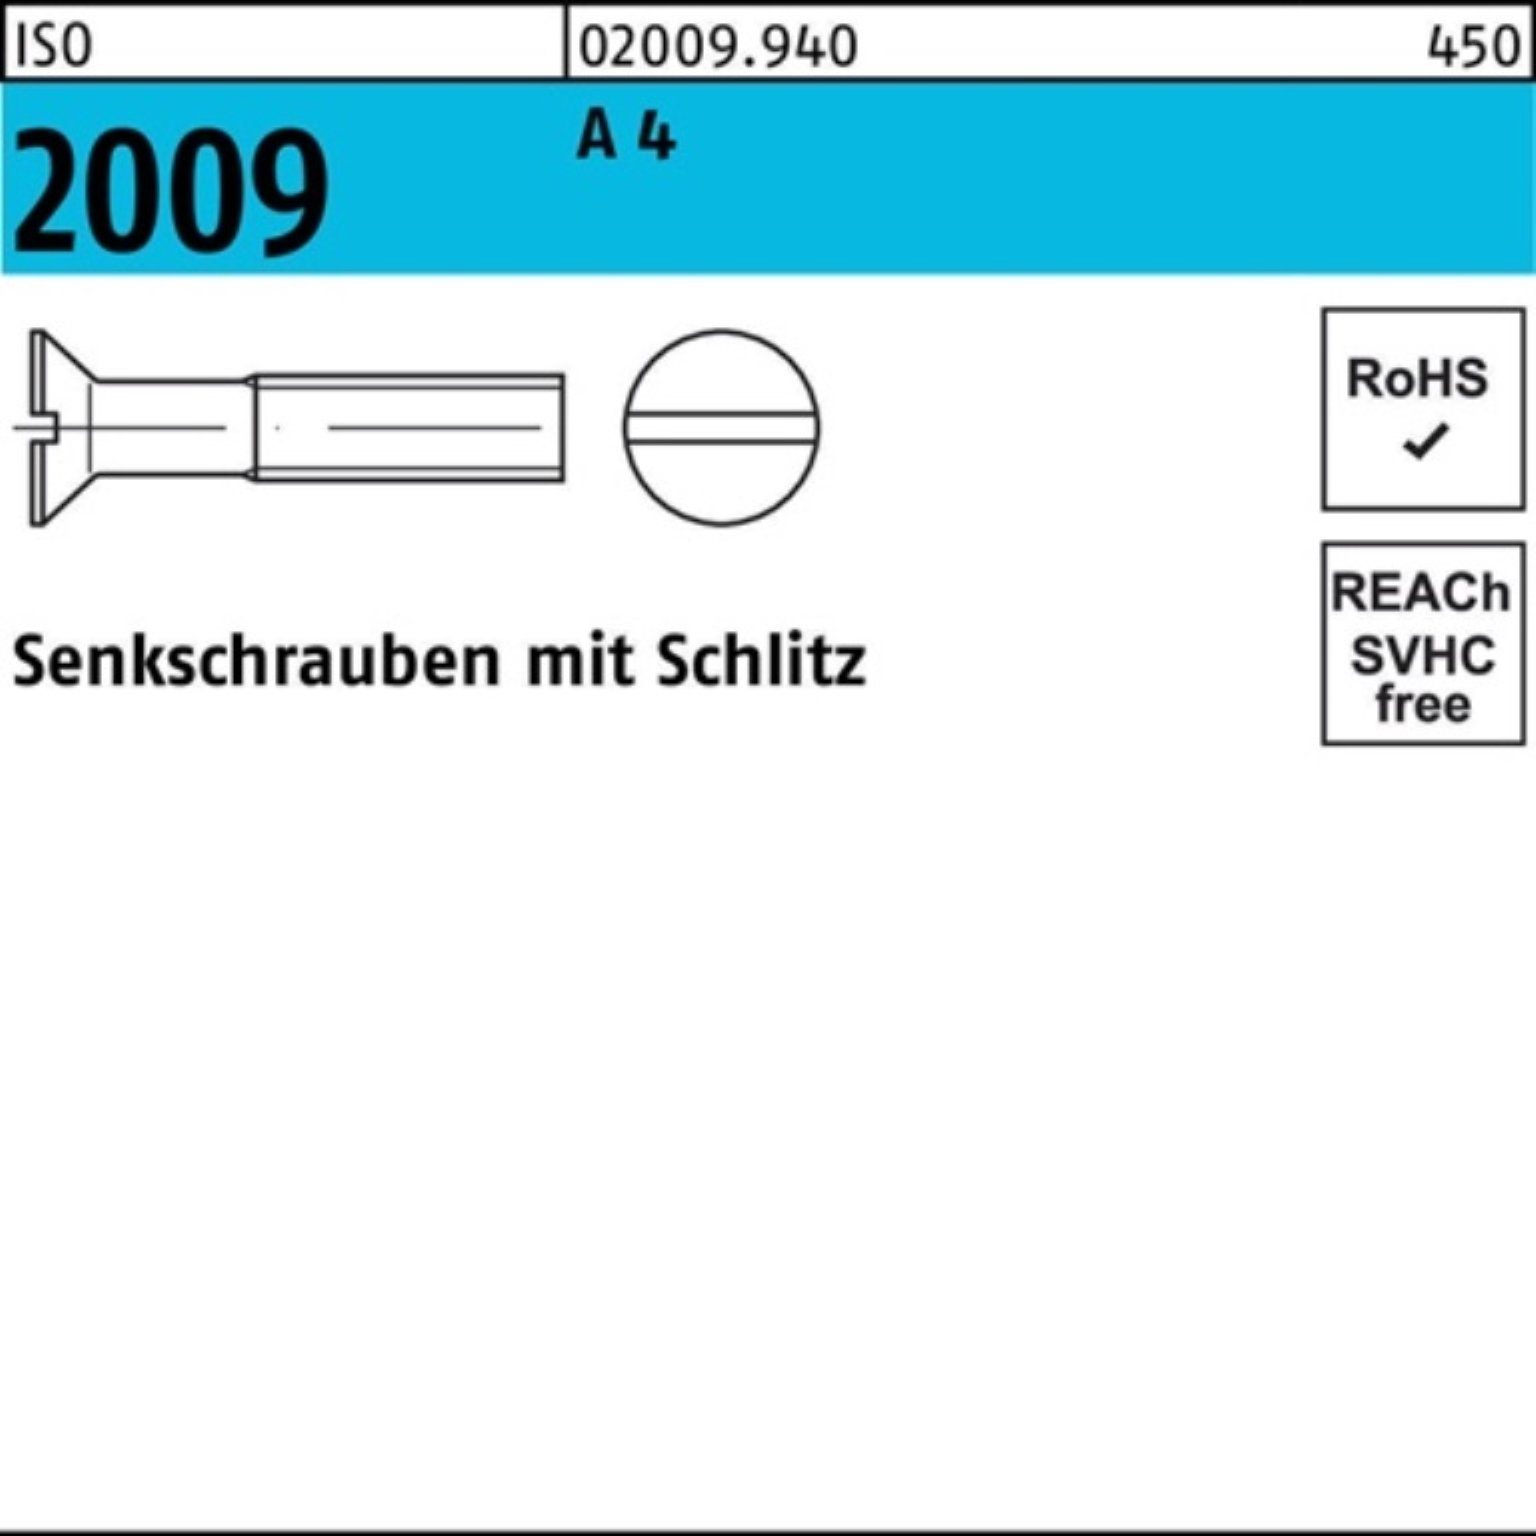 Reyher Senkschraube 4 M10x Pack ISO 200 Senkschraube 100er 50 Schlitz ISO 45 Stück A 2009